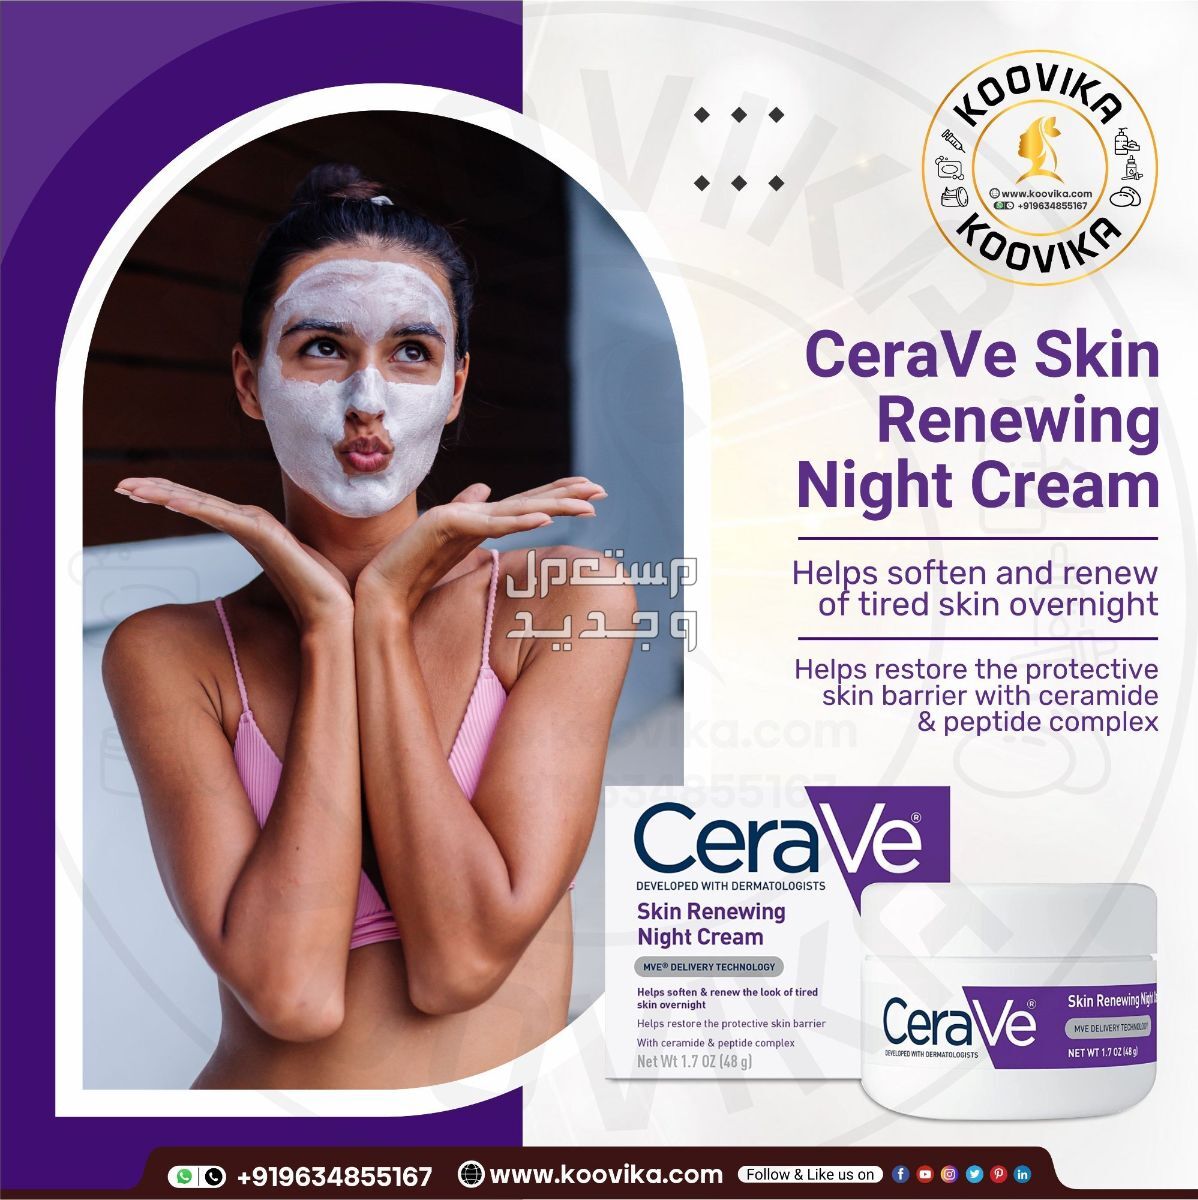 أفضل كريم ليلي للعناية بالبشرة لعام 2023 في مصر شكل كريم ليلي من CeraVe Skin Renewing Night Cream على البشرة